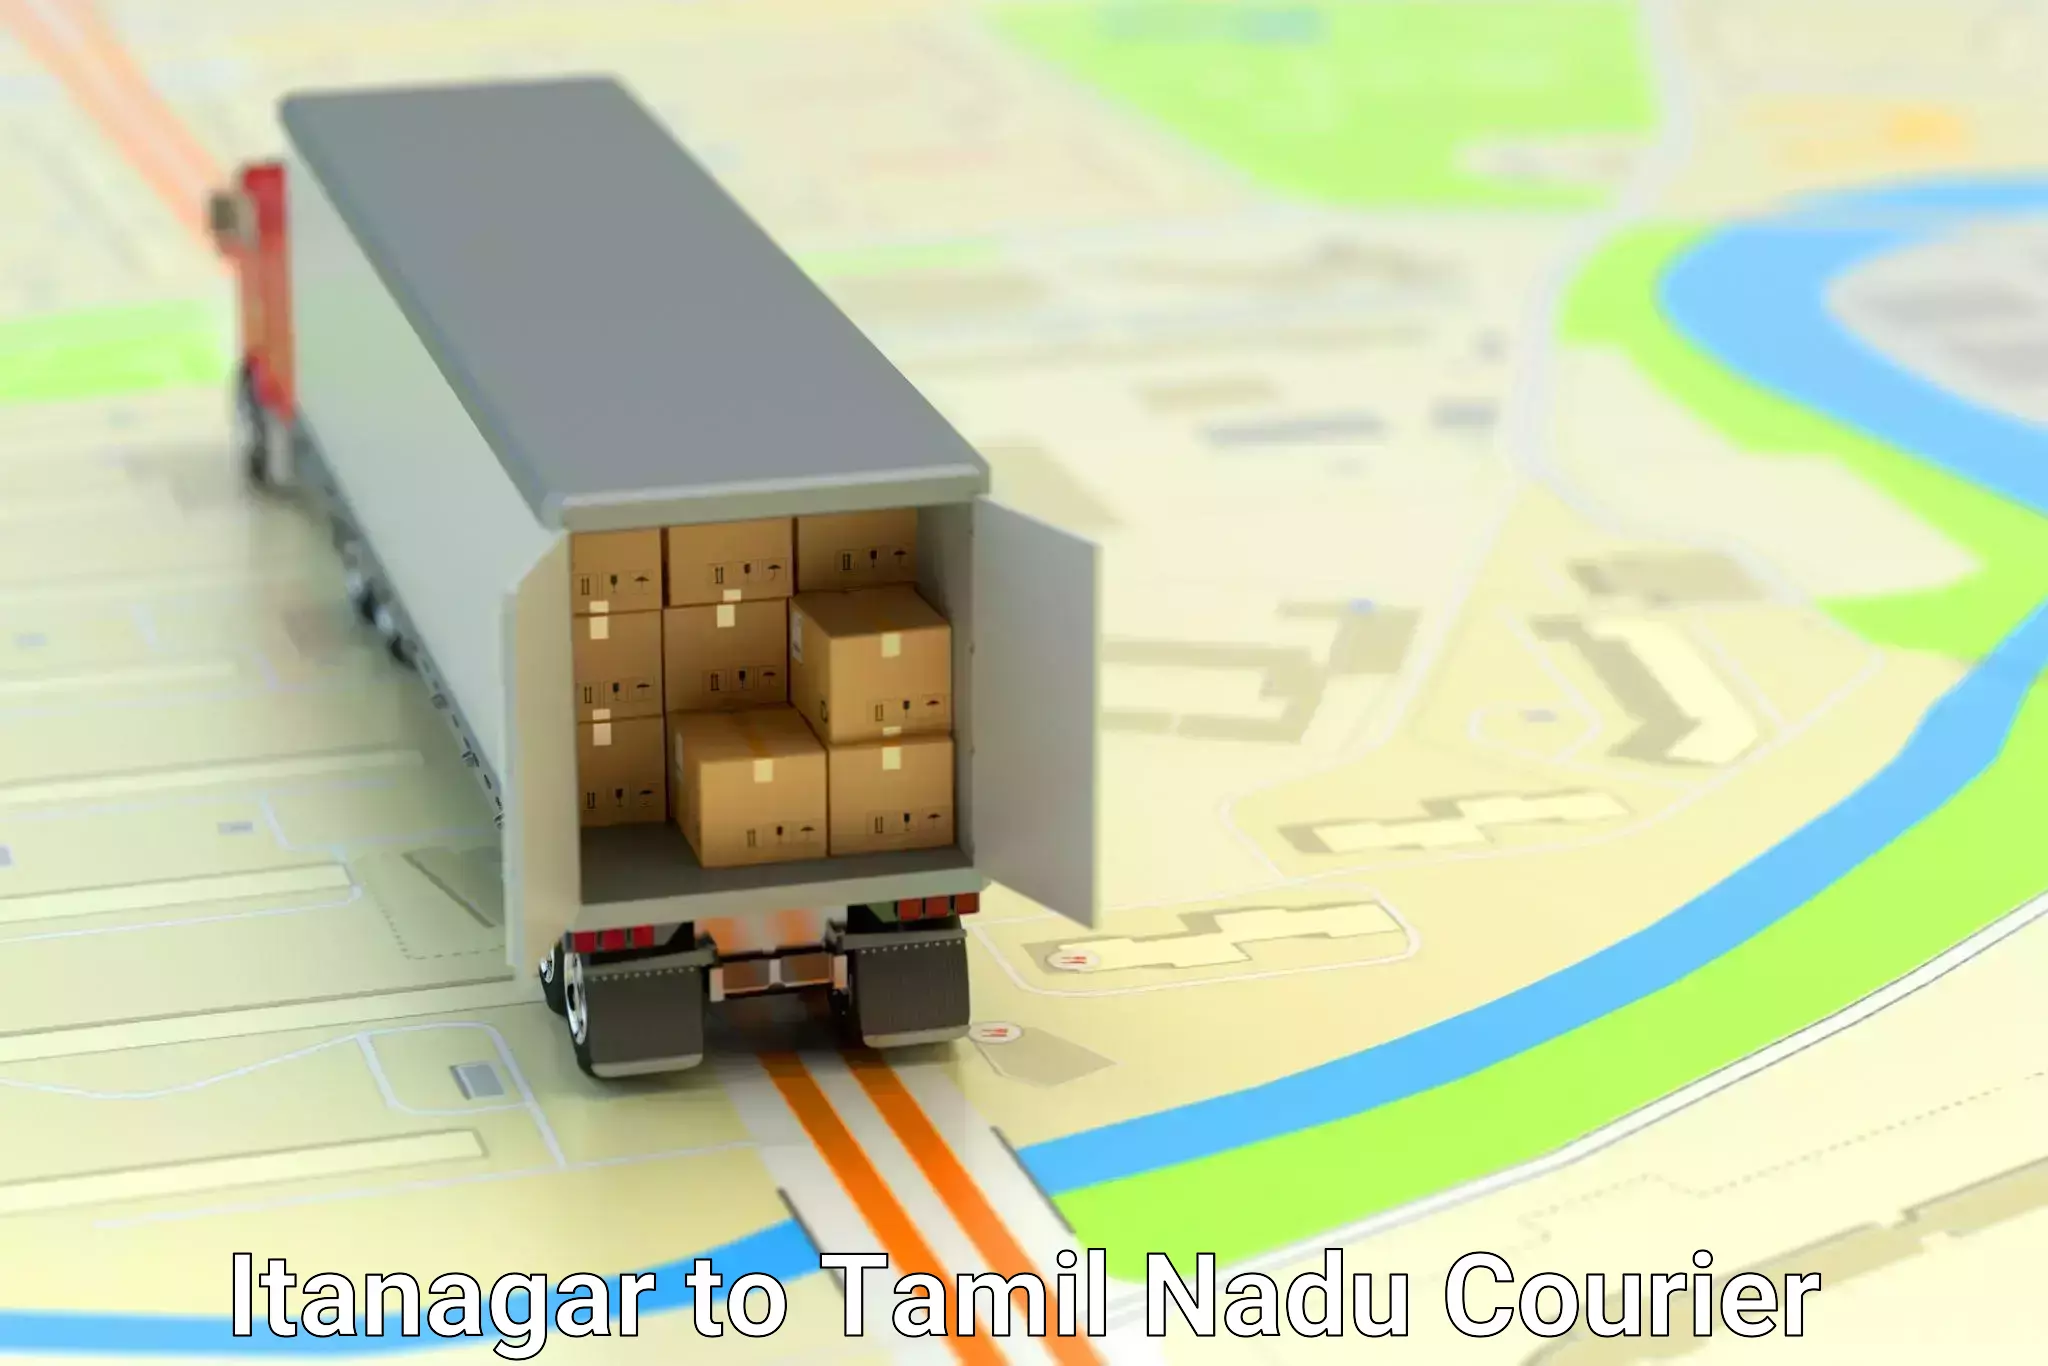 Cargo courier service Itanagar to Tamil Nadu